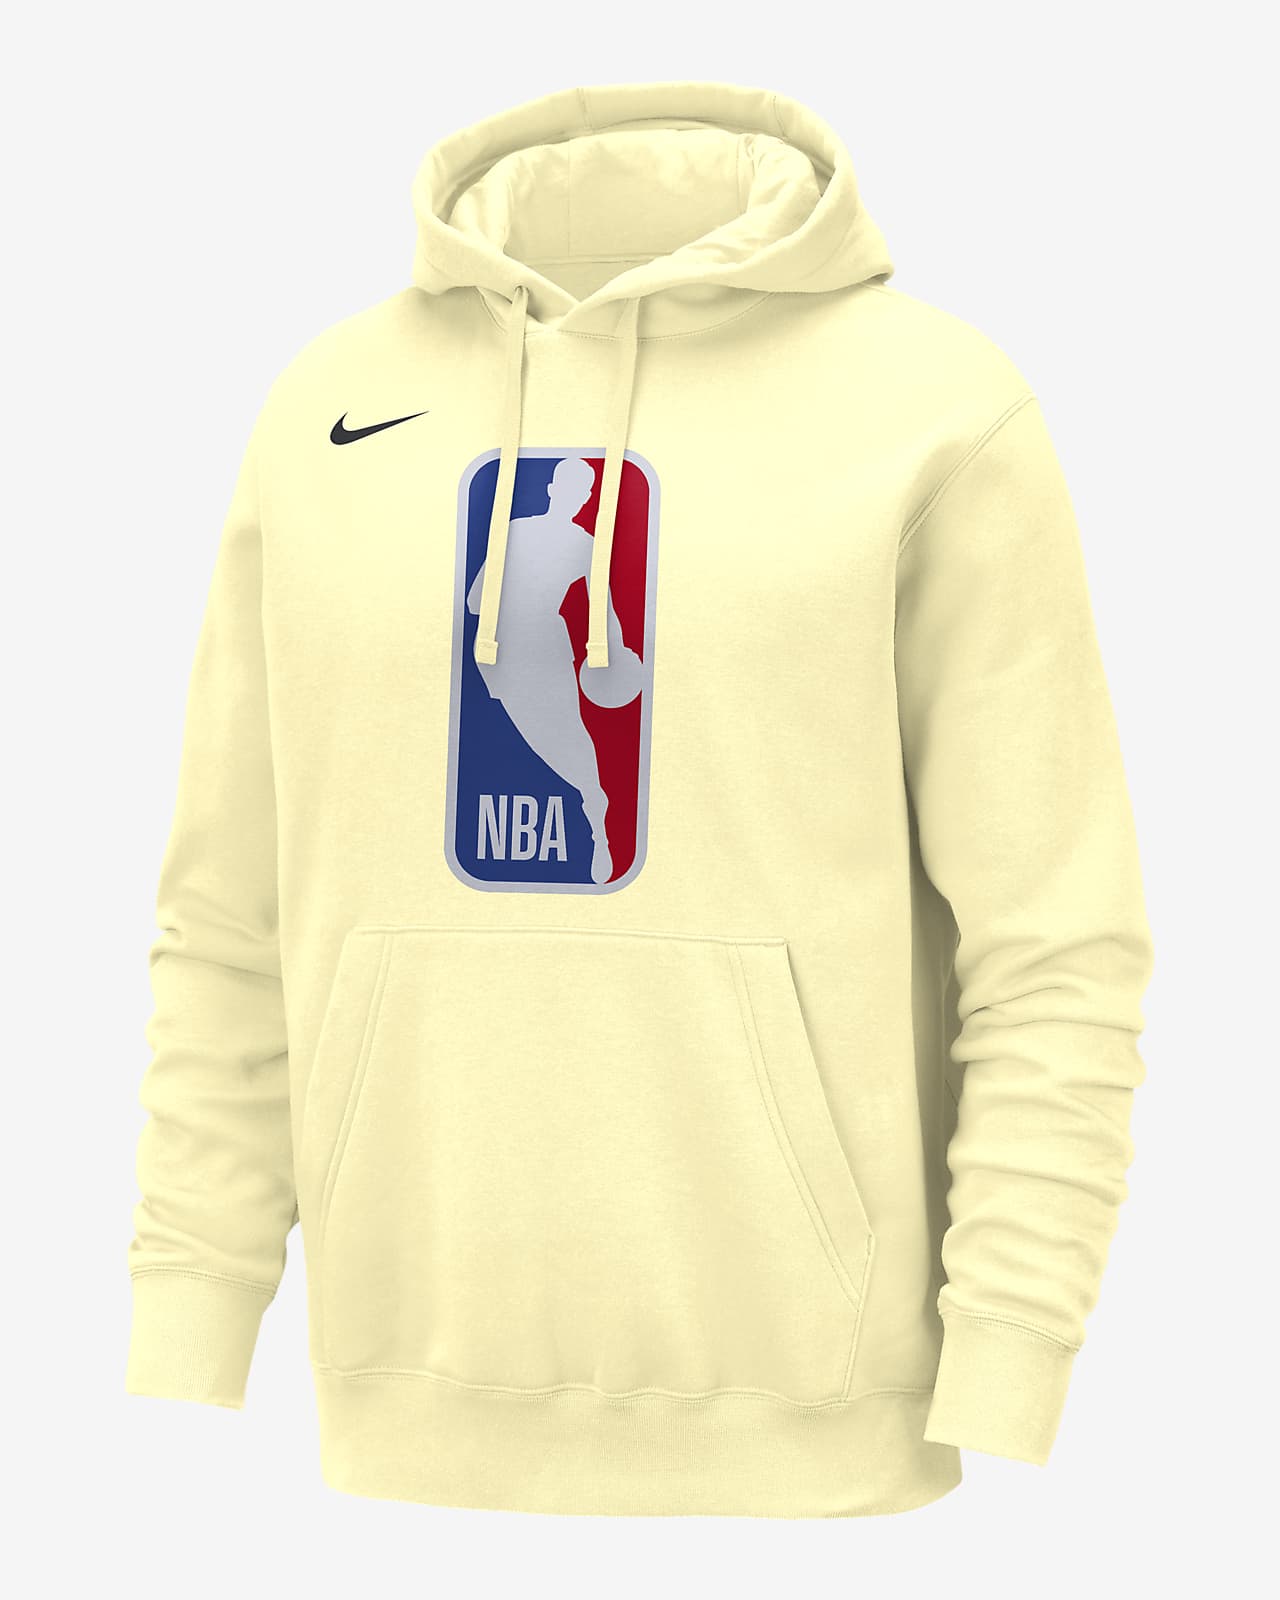 Team 31 Club Sudadera con capucha Nike de la NBA - Hombre